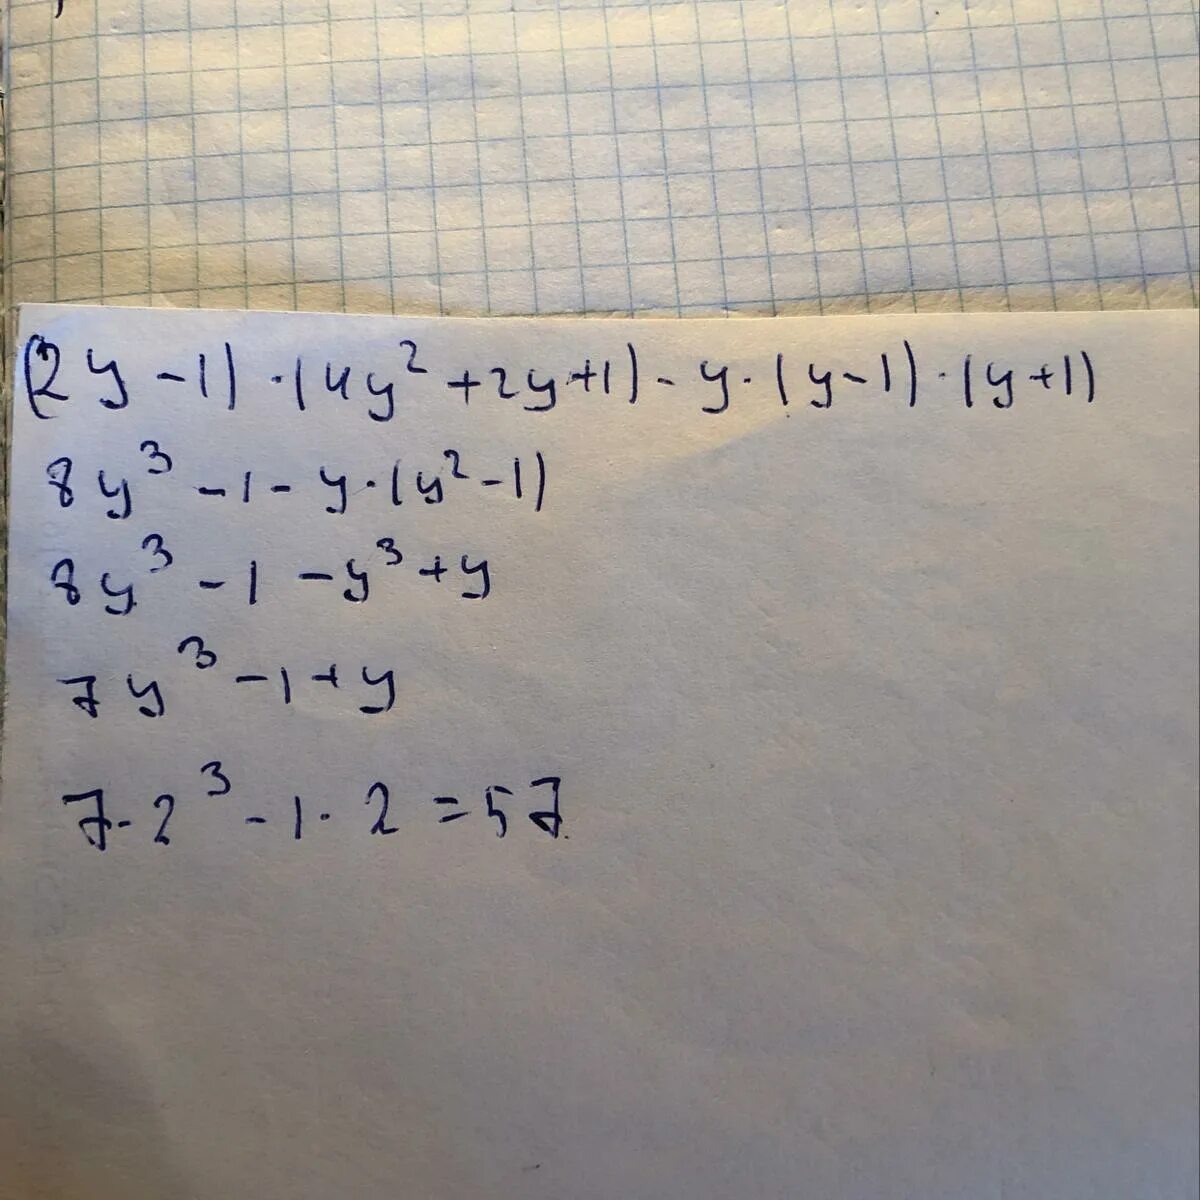 (3-У) -У(У+1) при у= 7. 4-У -У У+1 при у -1/9. При а =1 1/4. 4.2.1. Найдите значение выражения у 8 2 у2